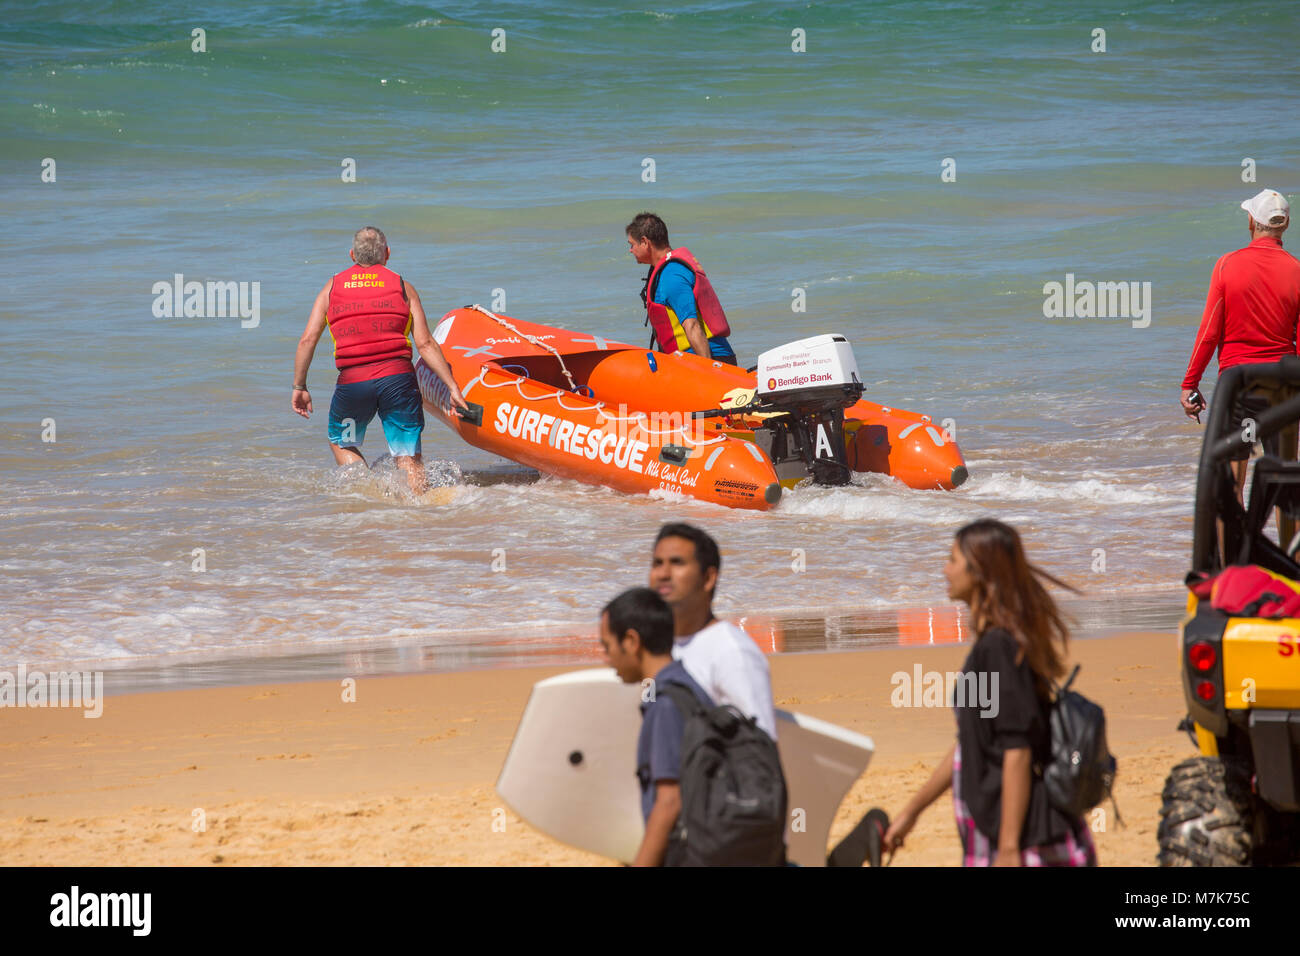 Les bénévoles de surf australienne avec Zodiac gonflable et beach buggy transports le Curl Curl Beach au nord de Sydney, Australie Banque D'Images